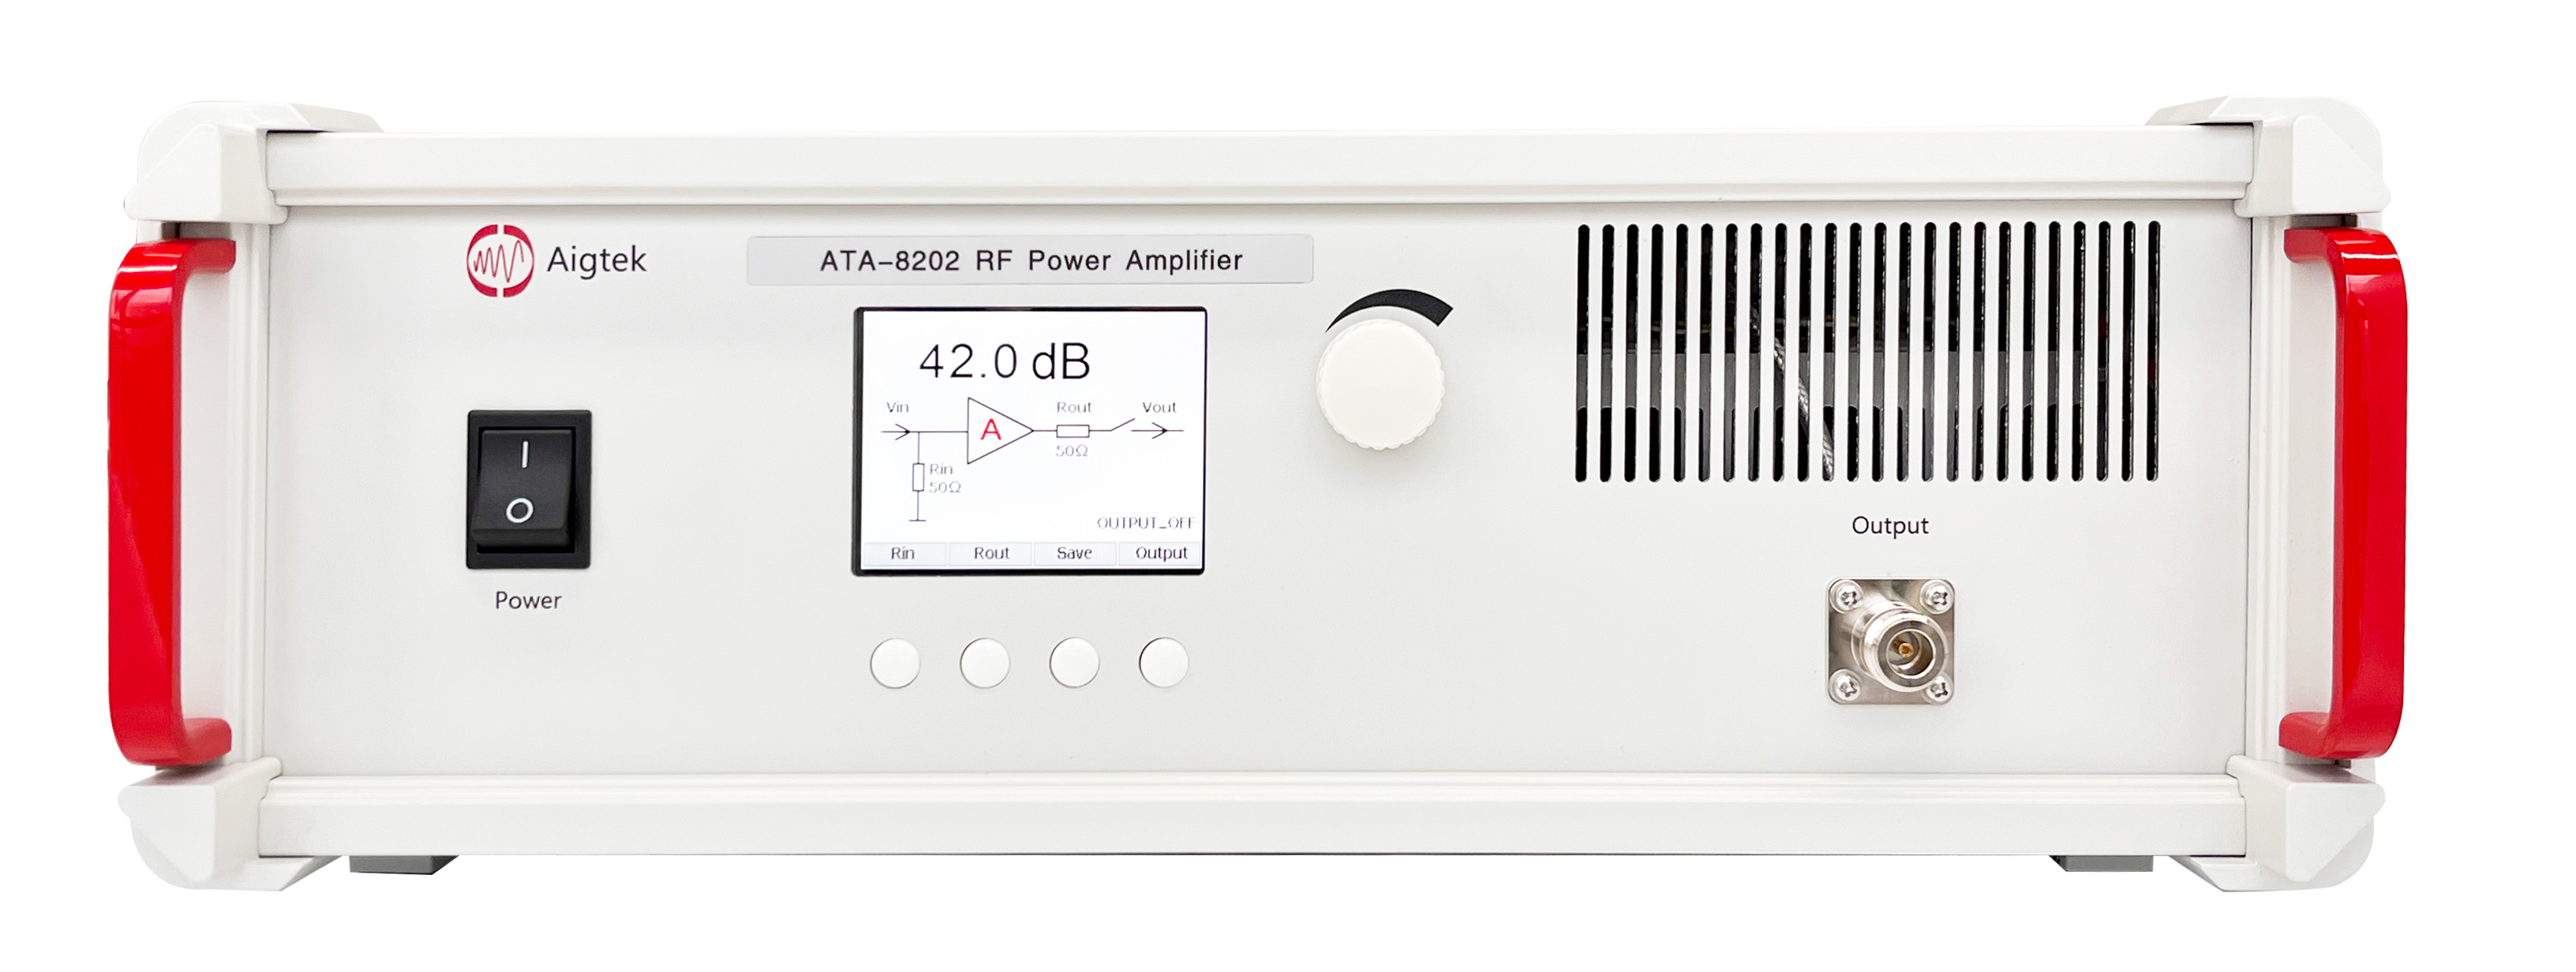 ATA-8202射频功率放大器在超声雾化研究中的应用